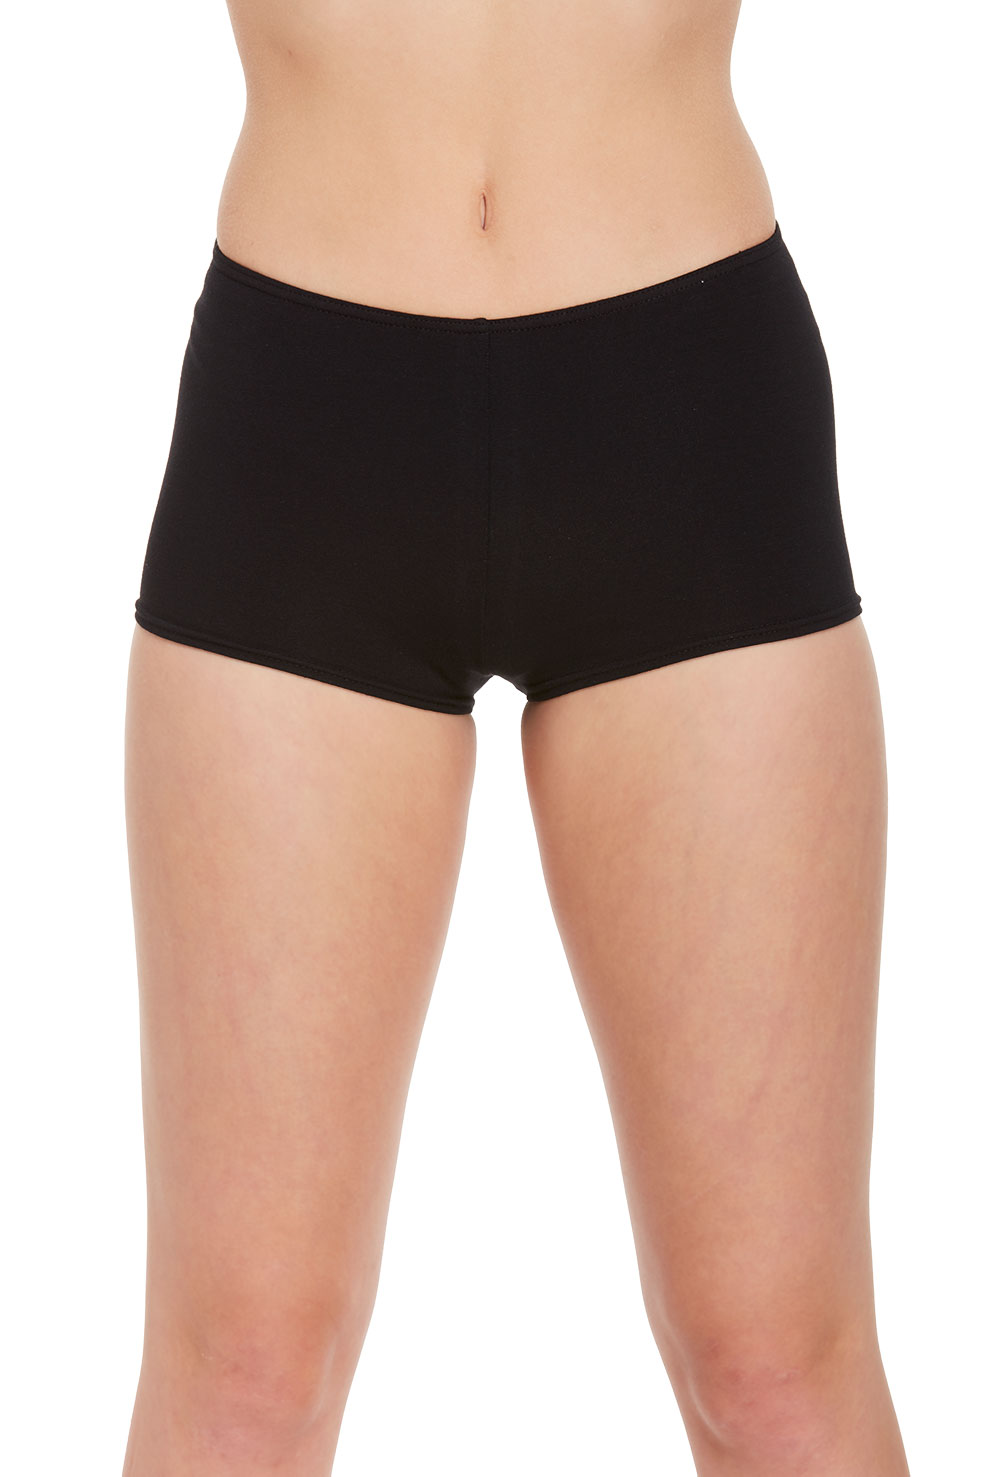 Girls Childrens Black Shiny Dance Gym Sports Running Hot Pants Shorts  KDT005 | eBay